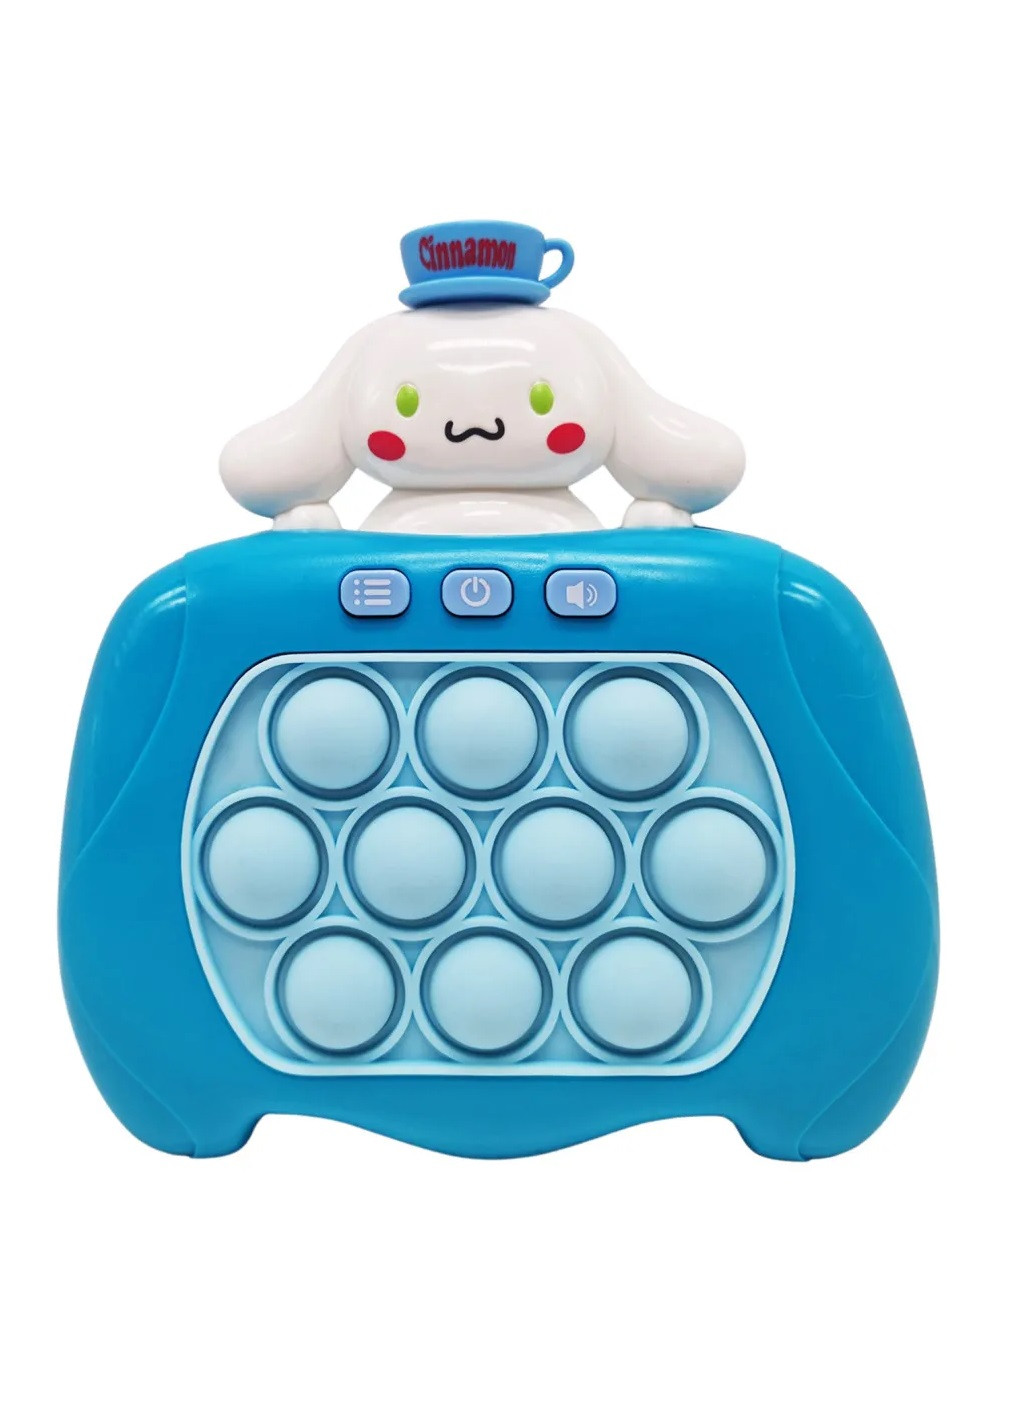 Електронна іграшка антистрес консоль головоломка для дітей малюків з бульбашками на батарейках (476247-Prob) Сіннаморолл синій Unbranded (277978167)